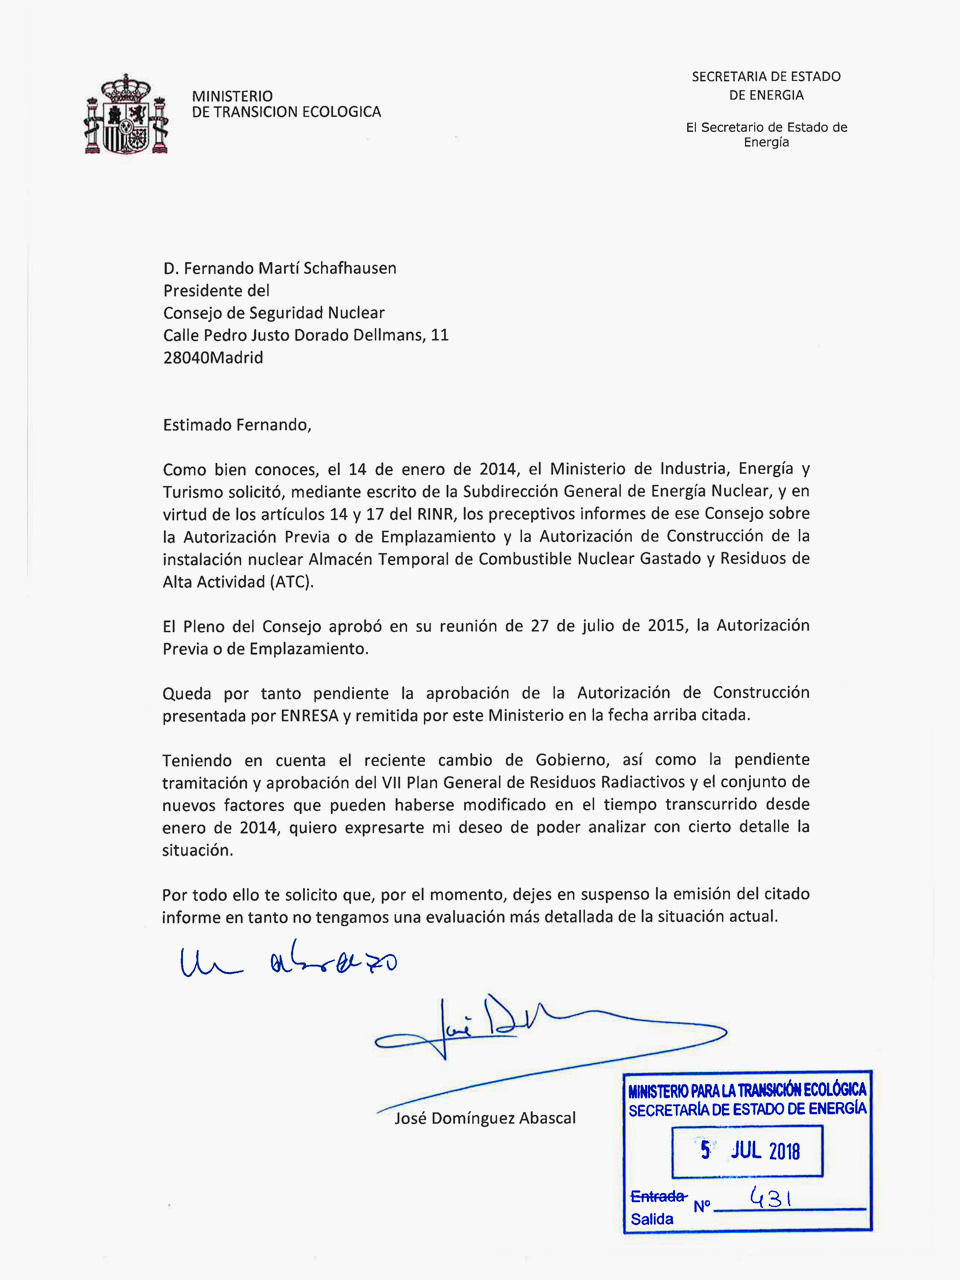 Carta remitida al CSN sobre el ATC Villar de Cañas